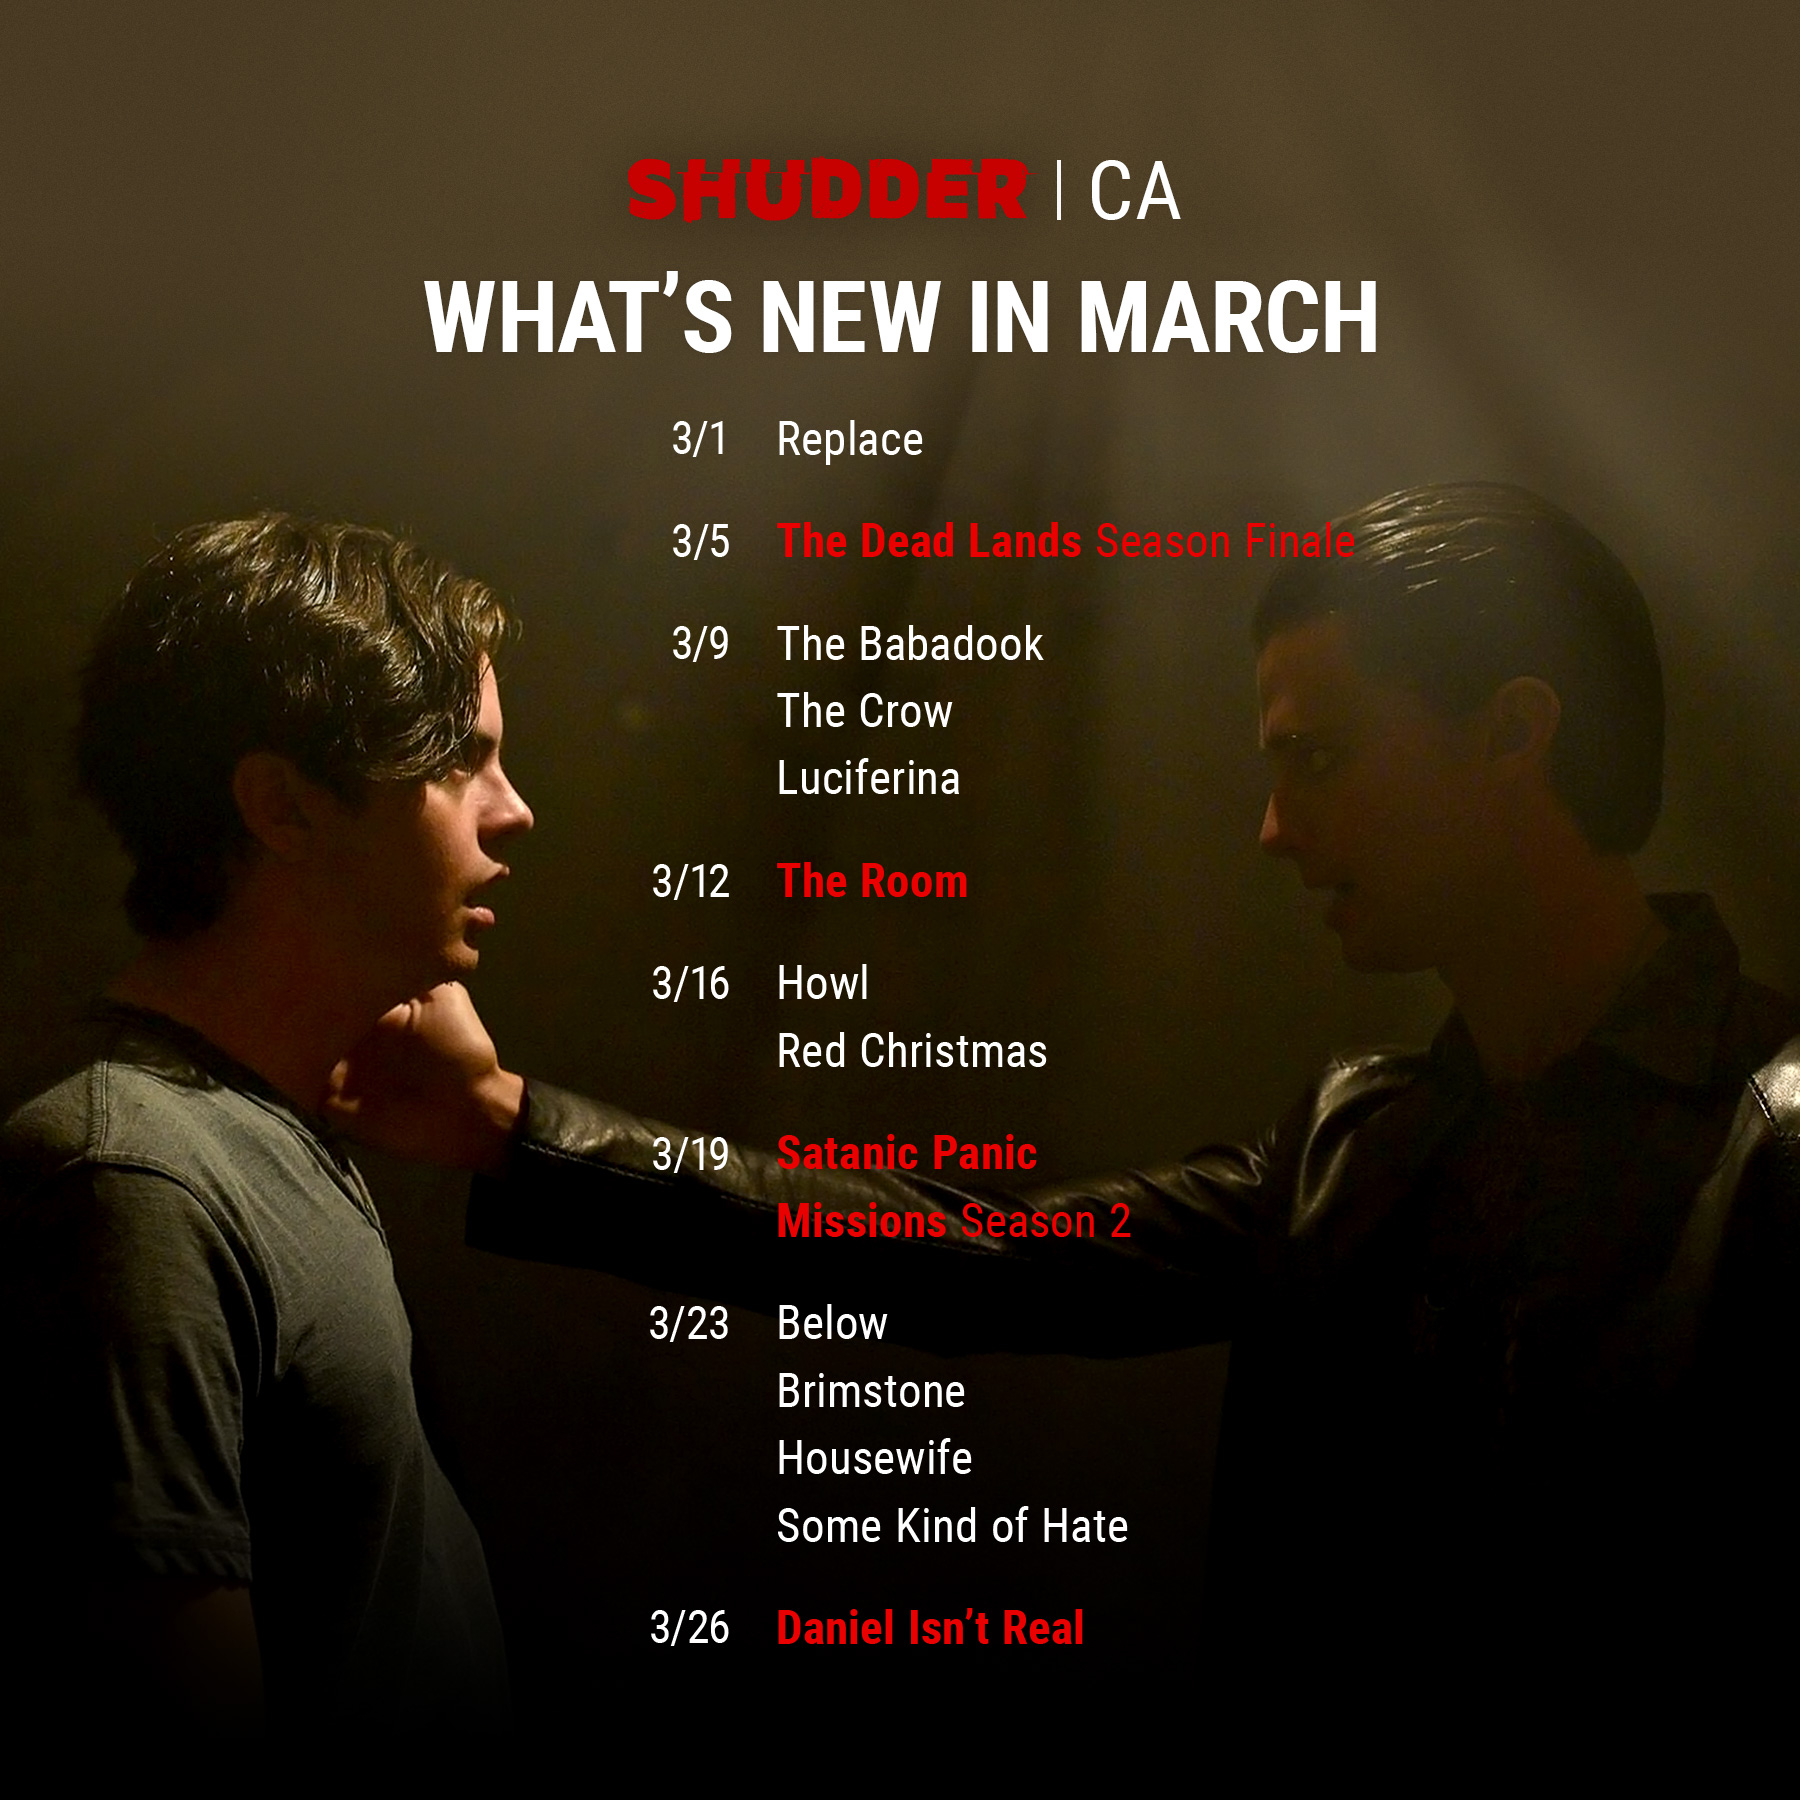 shudder_2020_march_CA